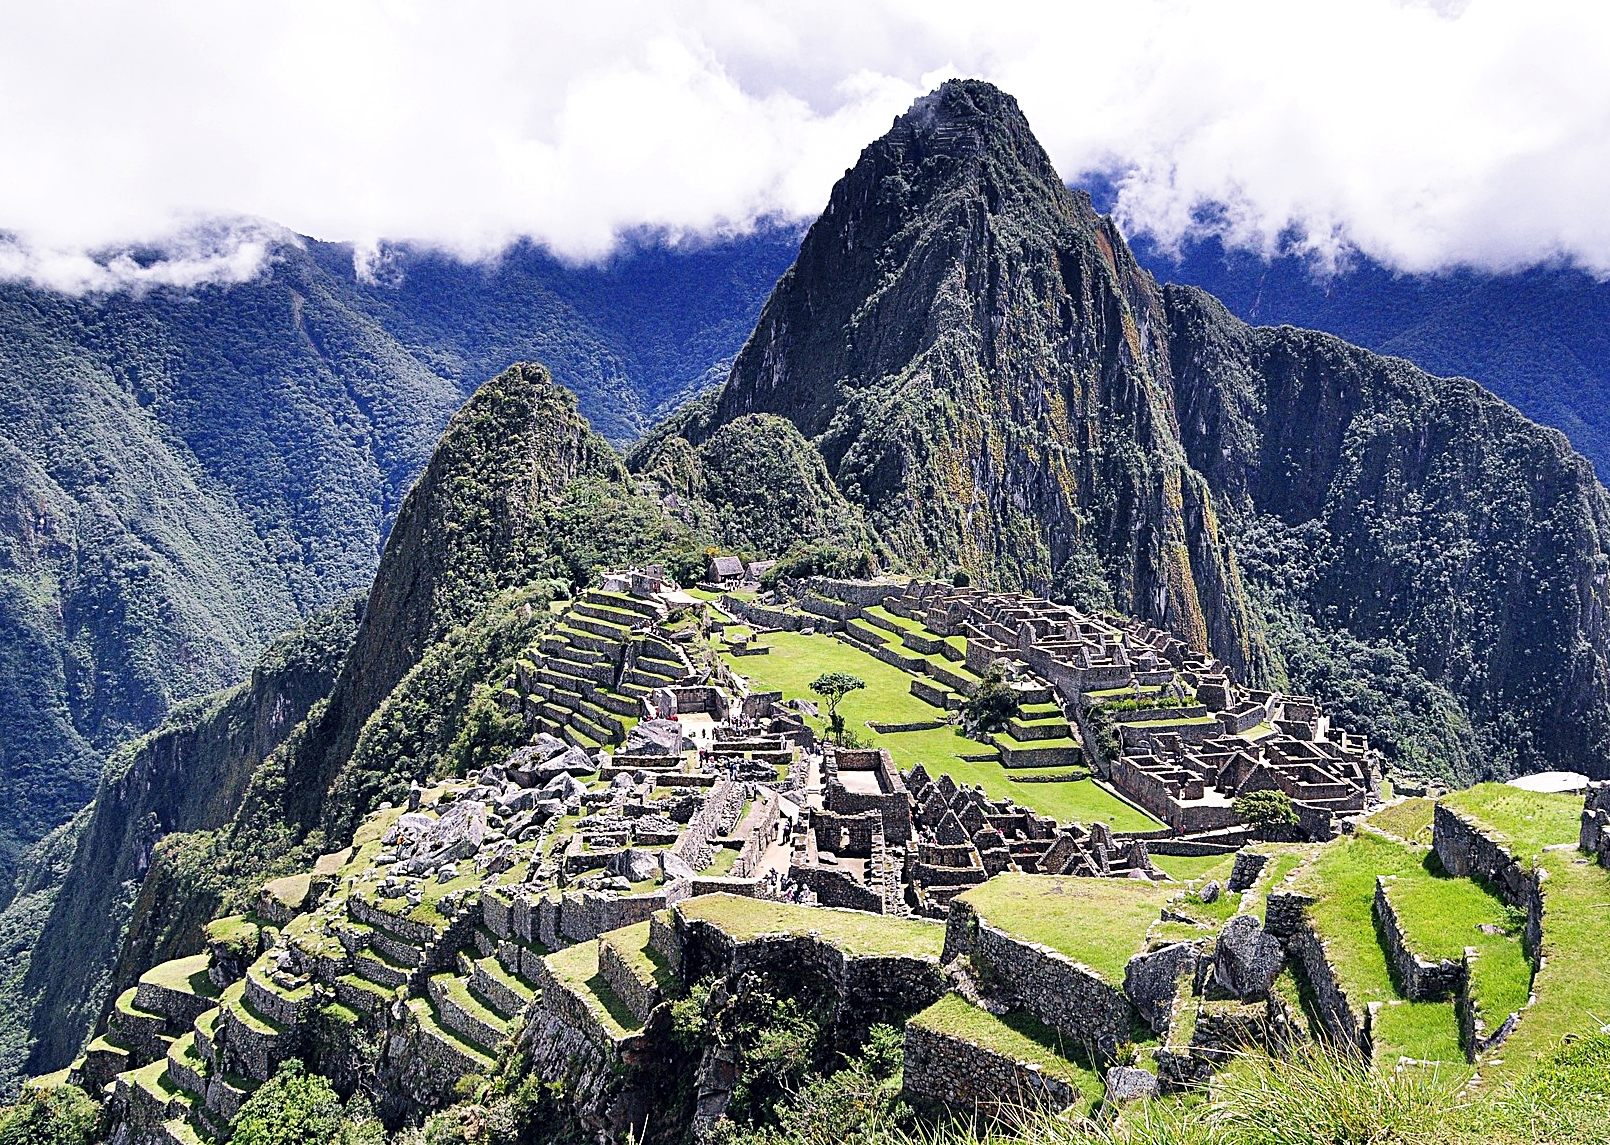 내셔널 지오그래픽은 잉카의 마지막 요새로 불리는 페루를 아드레날린이 샘솟는 모험 여행지에 선정했다.